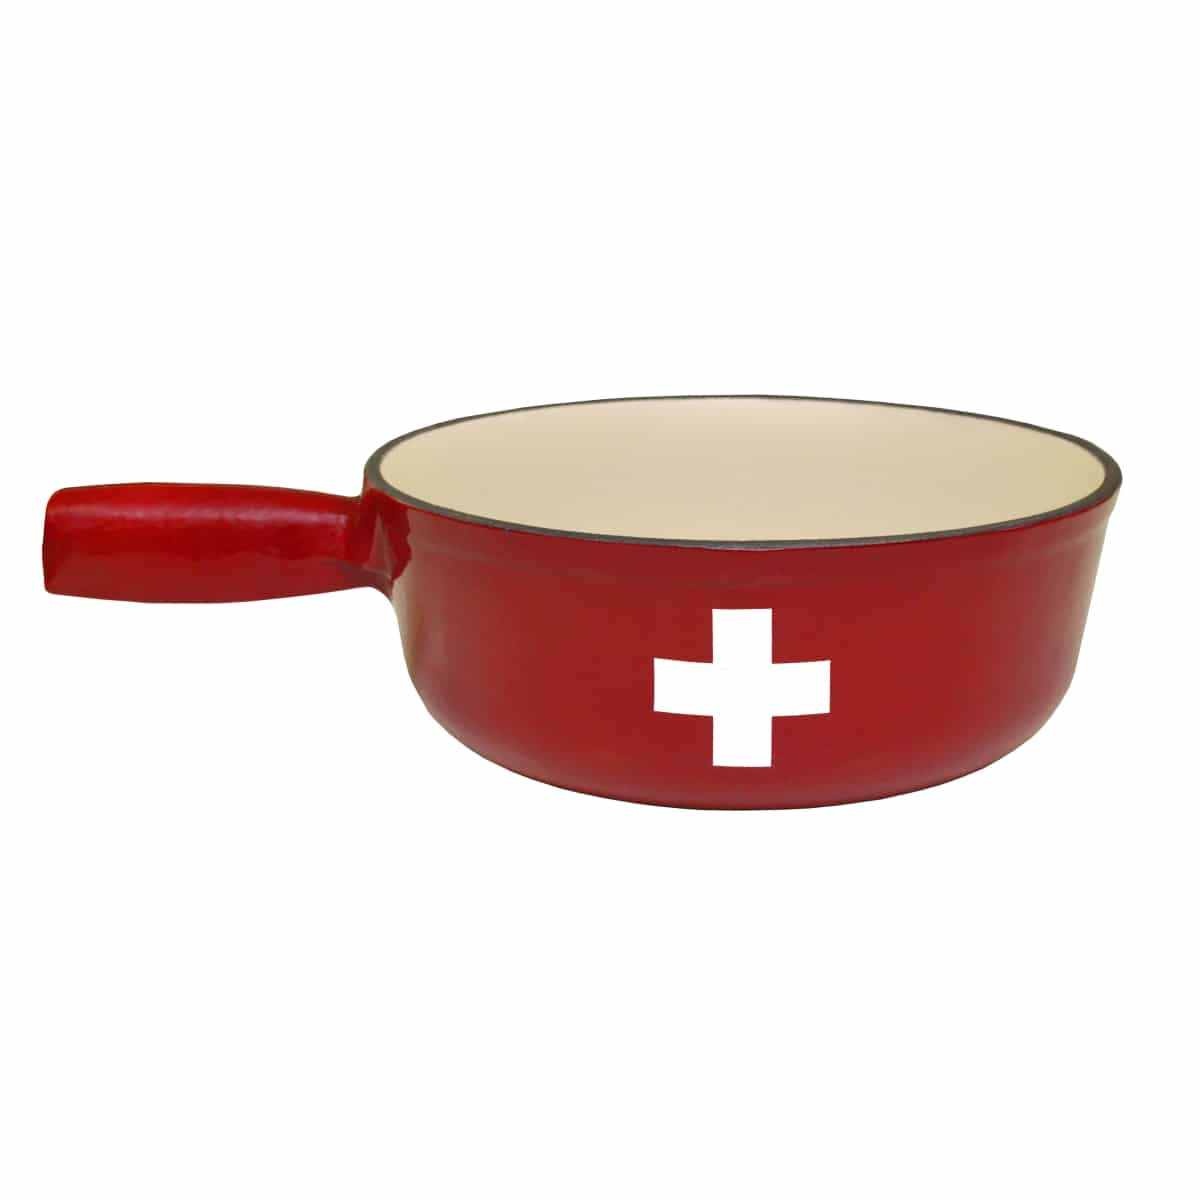 Caquelon à fondue Croix suisse fonte rouge Heidi Cheese Line